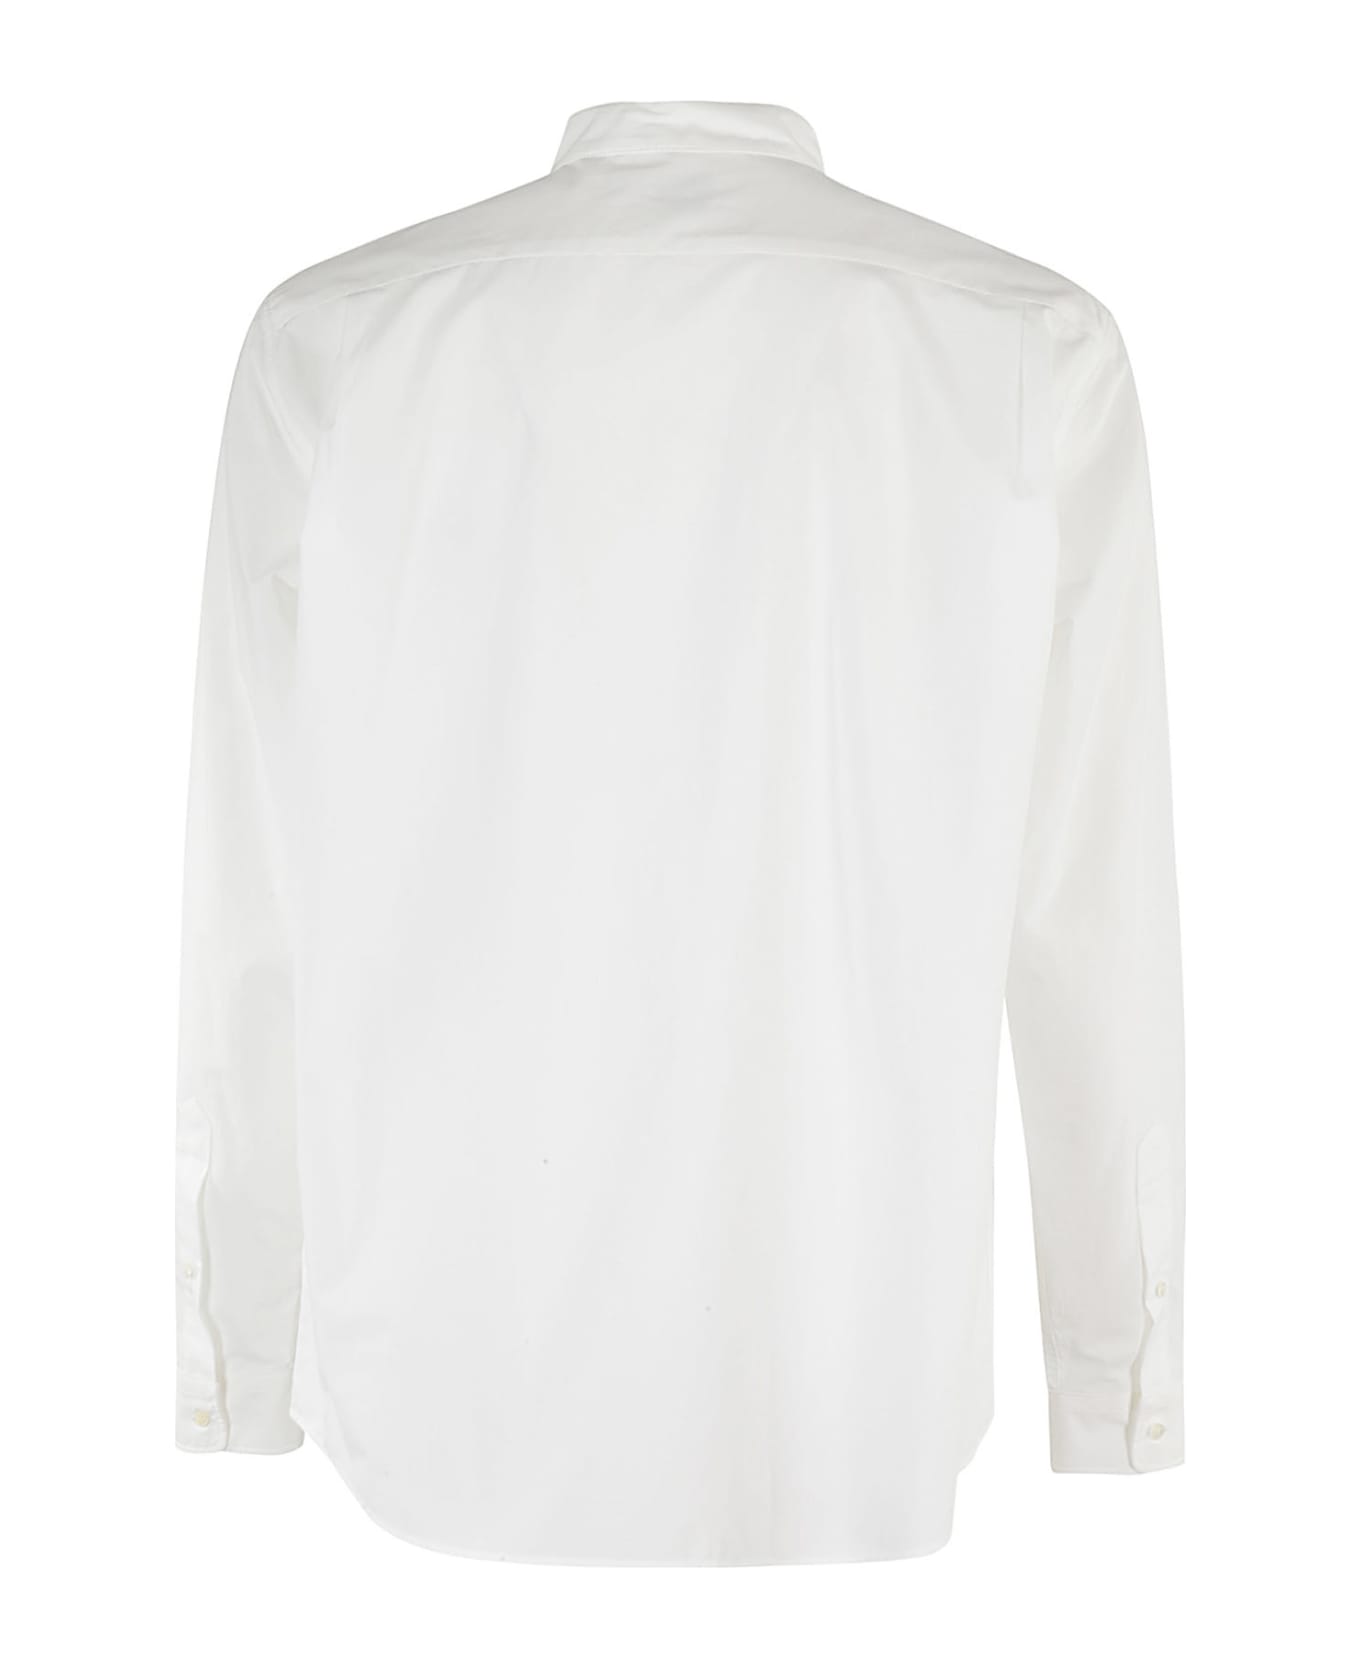 Kenzo Shirt - White